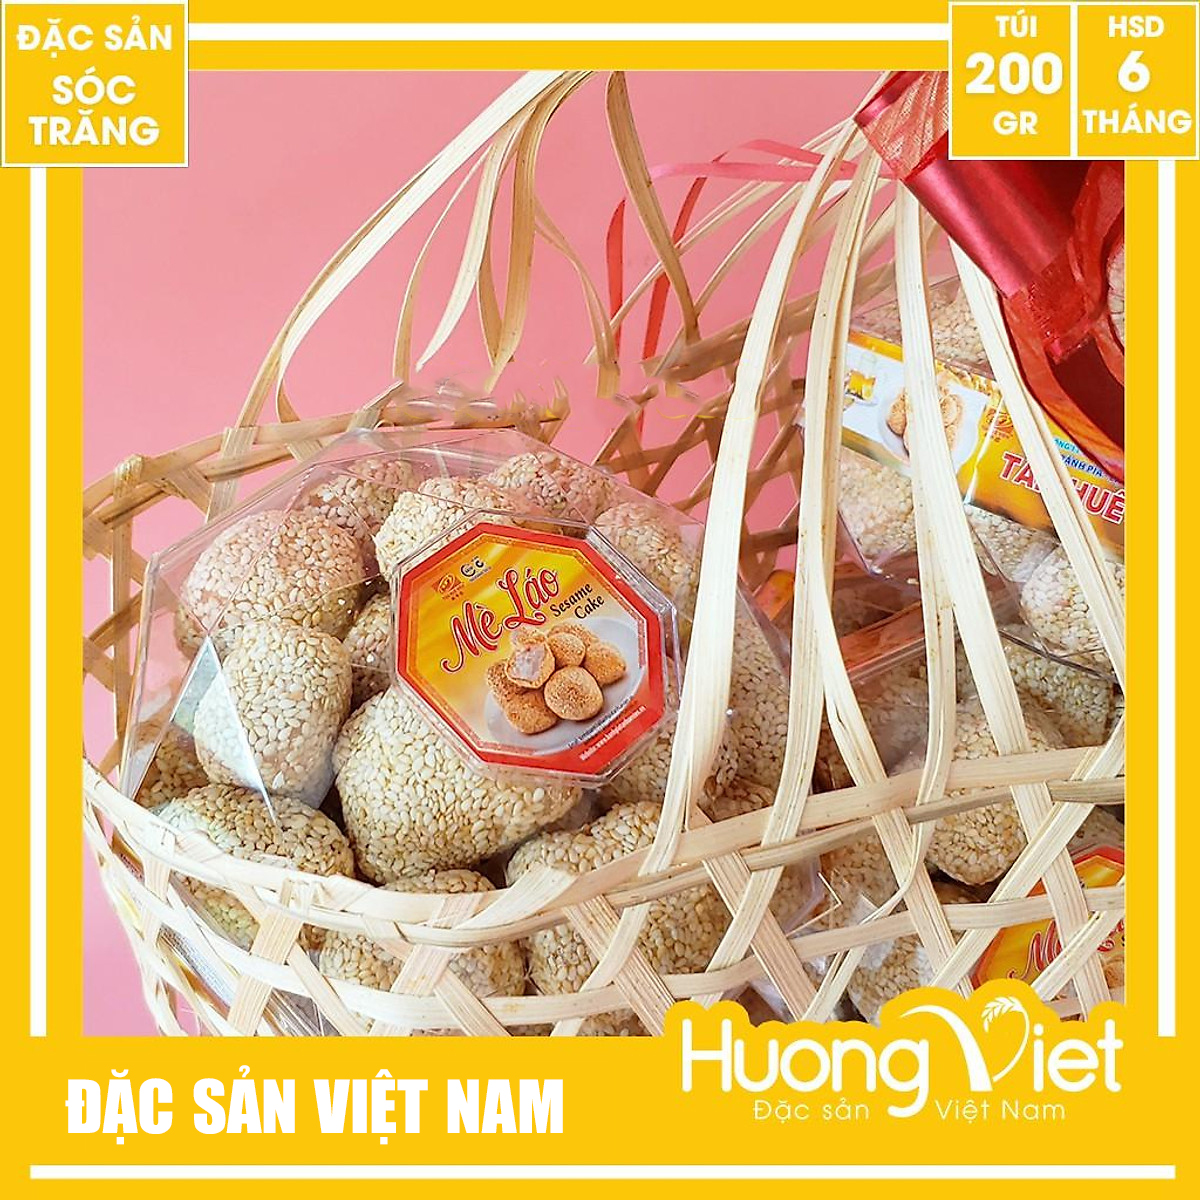 Đặc Sản Sóc Trăng - Bánh Mè Láo Hộp Kim Cương Tân Huê Viên Sóc Trăng 200G, Bánh Kẹo Ăn Vặt